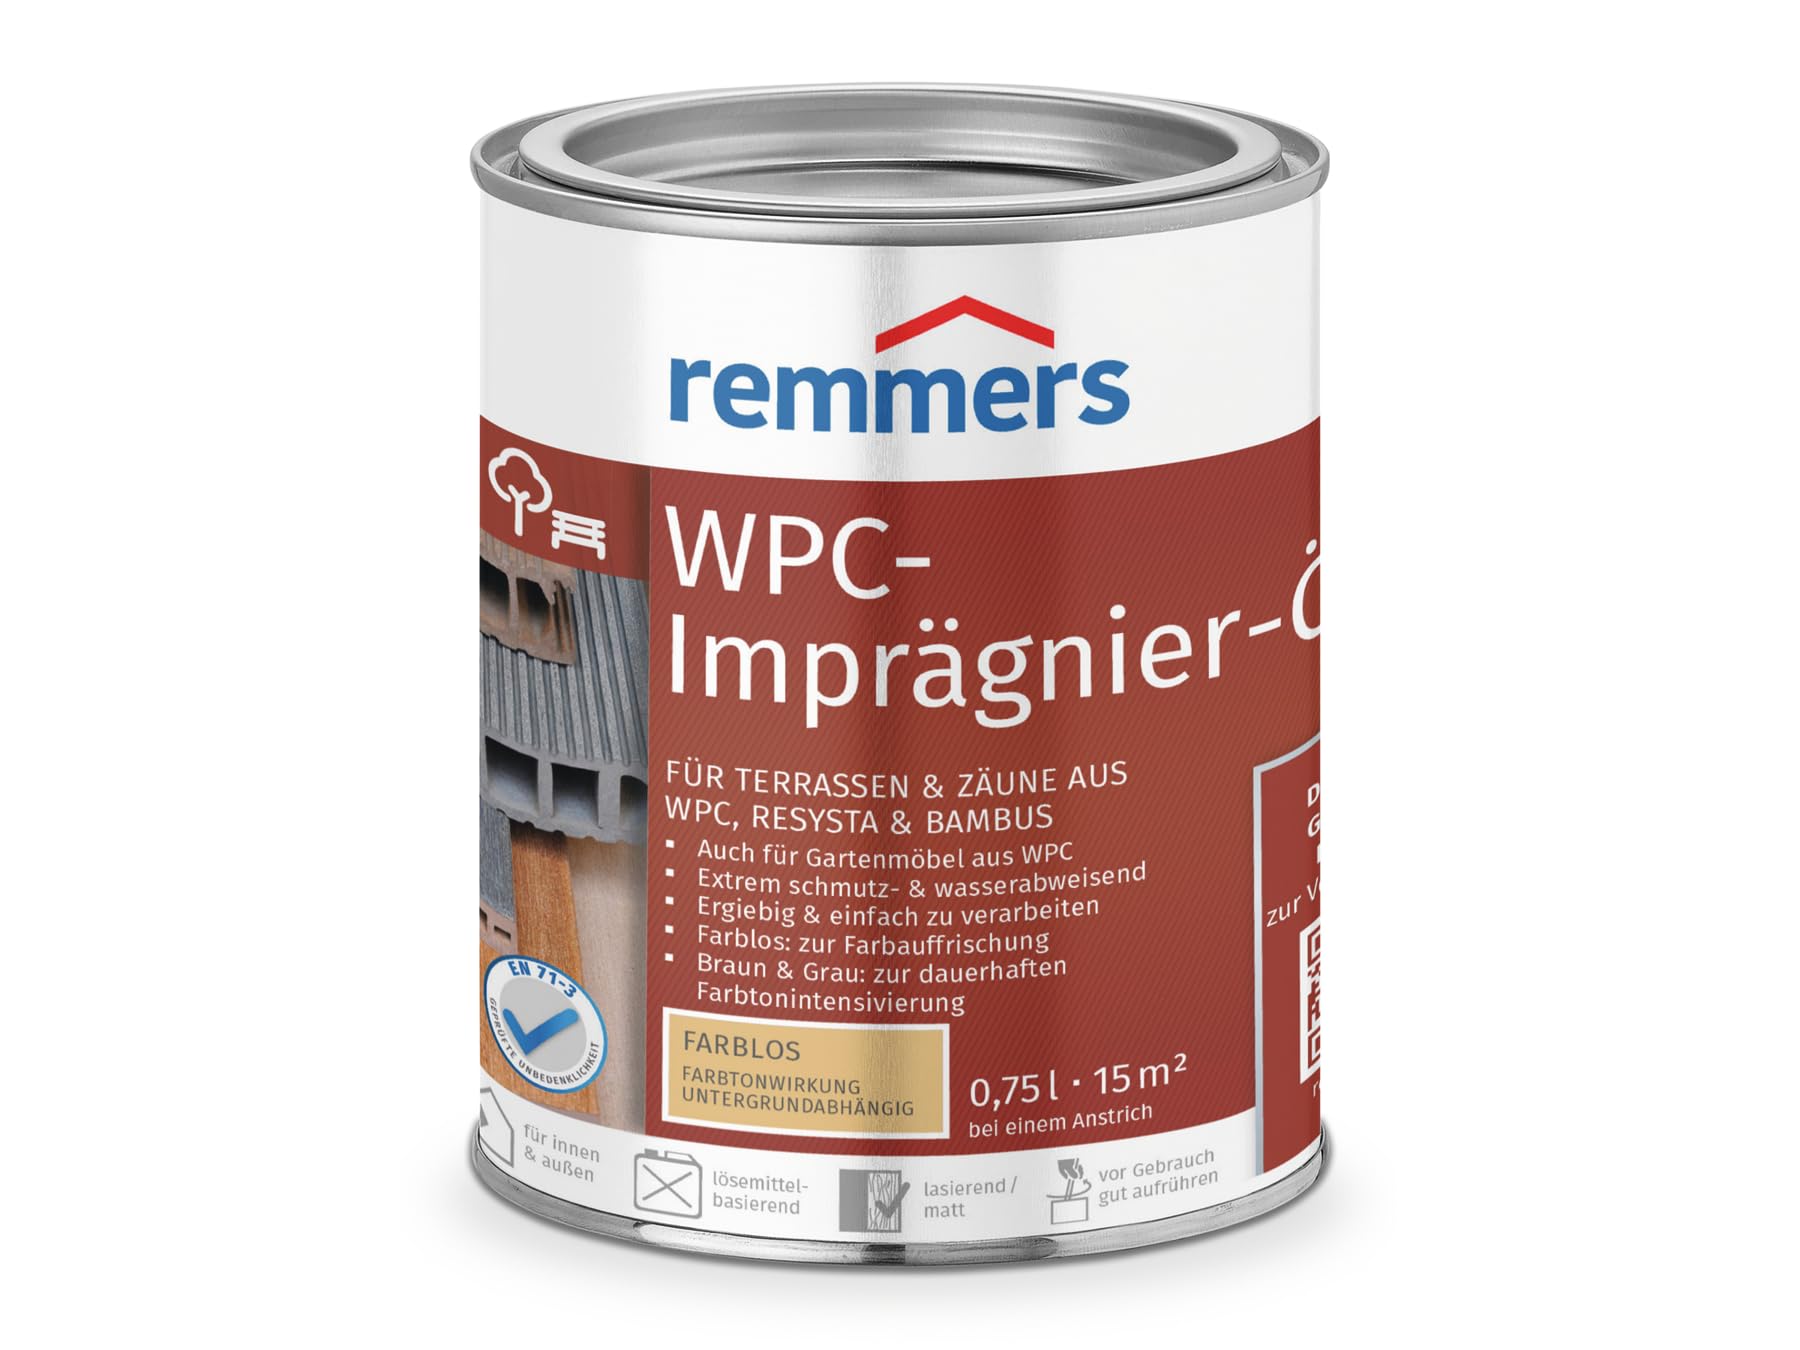 Remmers WPC-Imprägnier-Öl farblos, 0,75 Liter, WPC Öl für innen und außen, für Terrassen, Zäune oder Gartenmöbel aus WPC, Resysta und Bambus geeignet